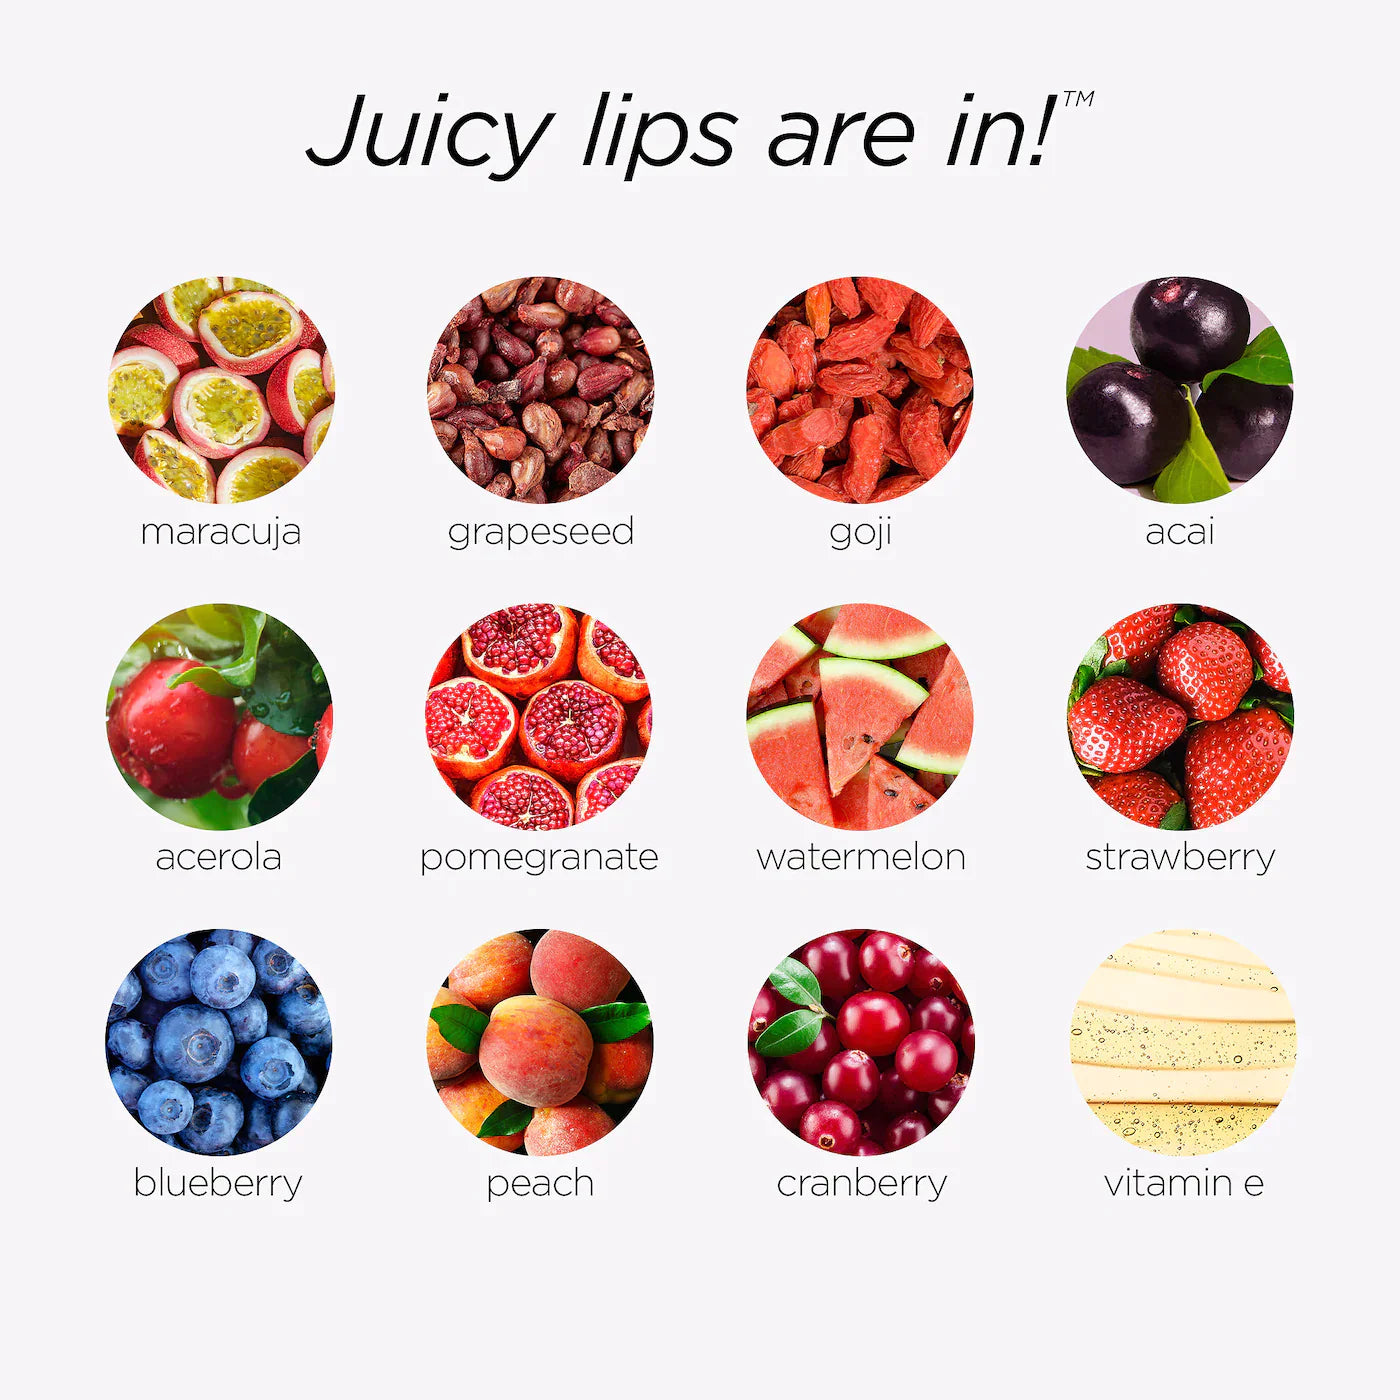 Tarte Maracuja Juicy Lip Plump | Mixed Berries